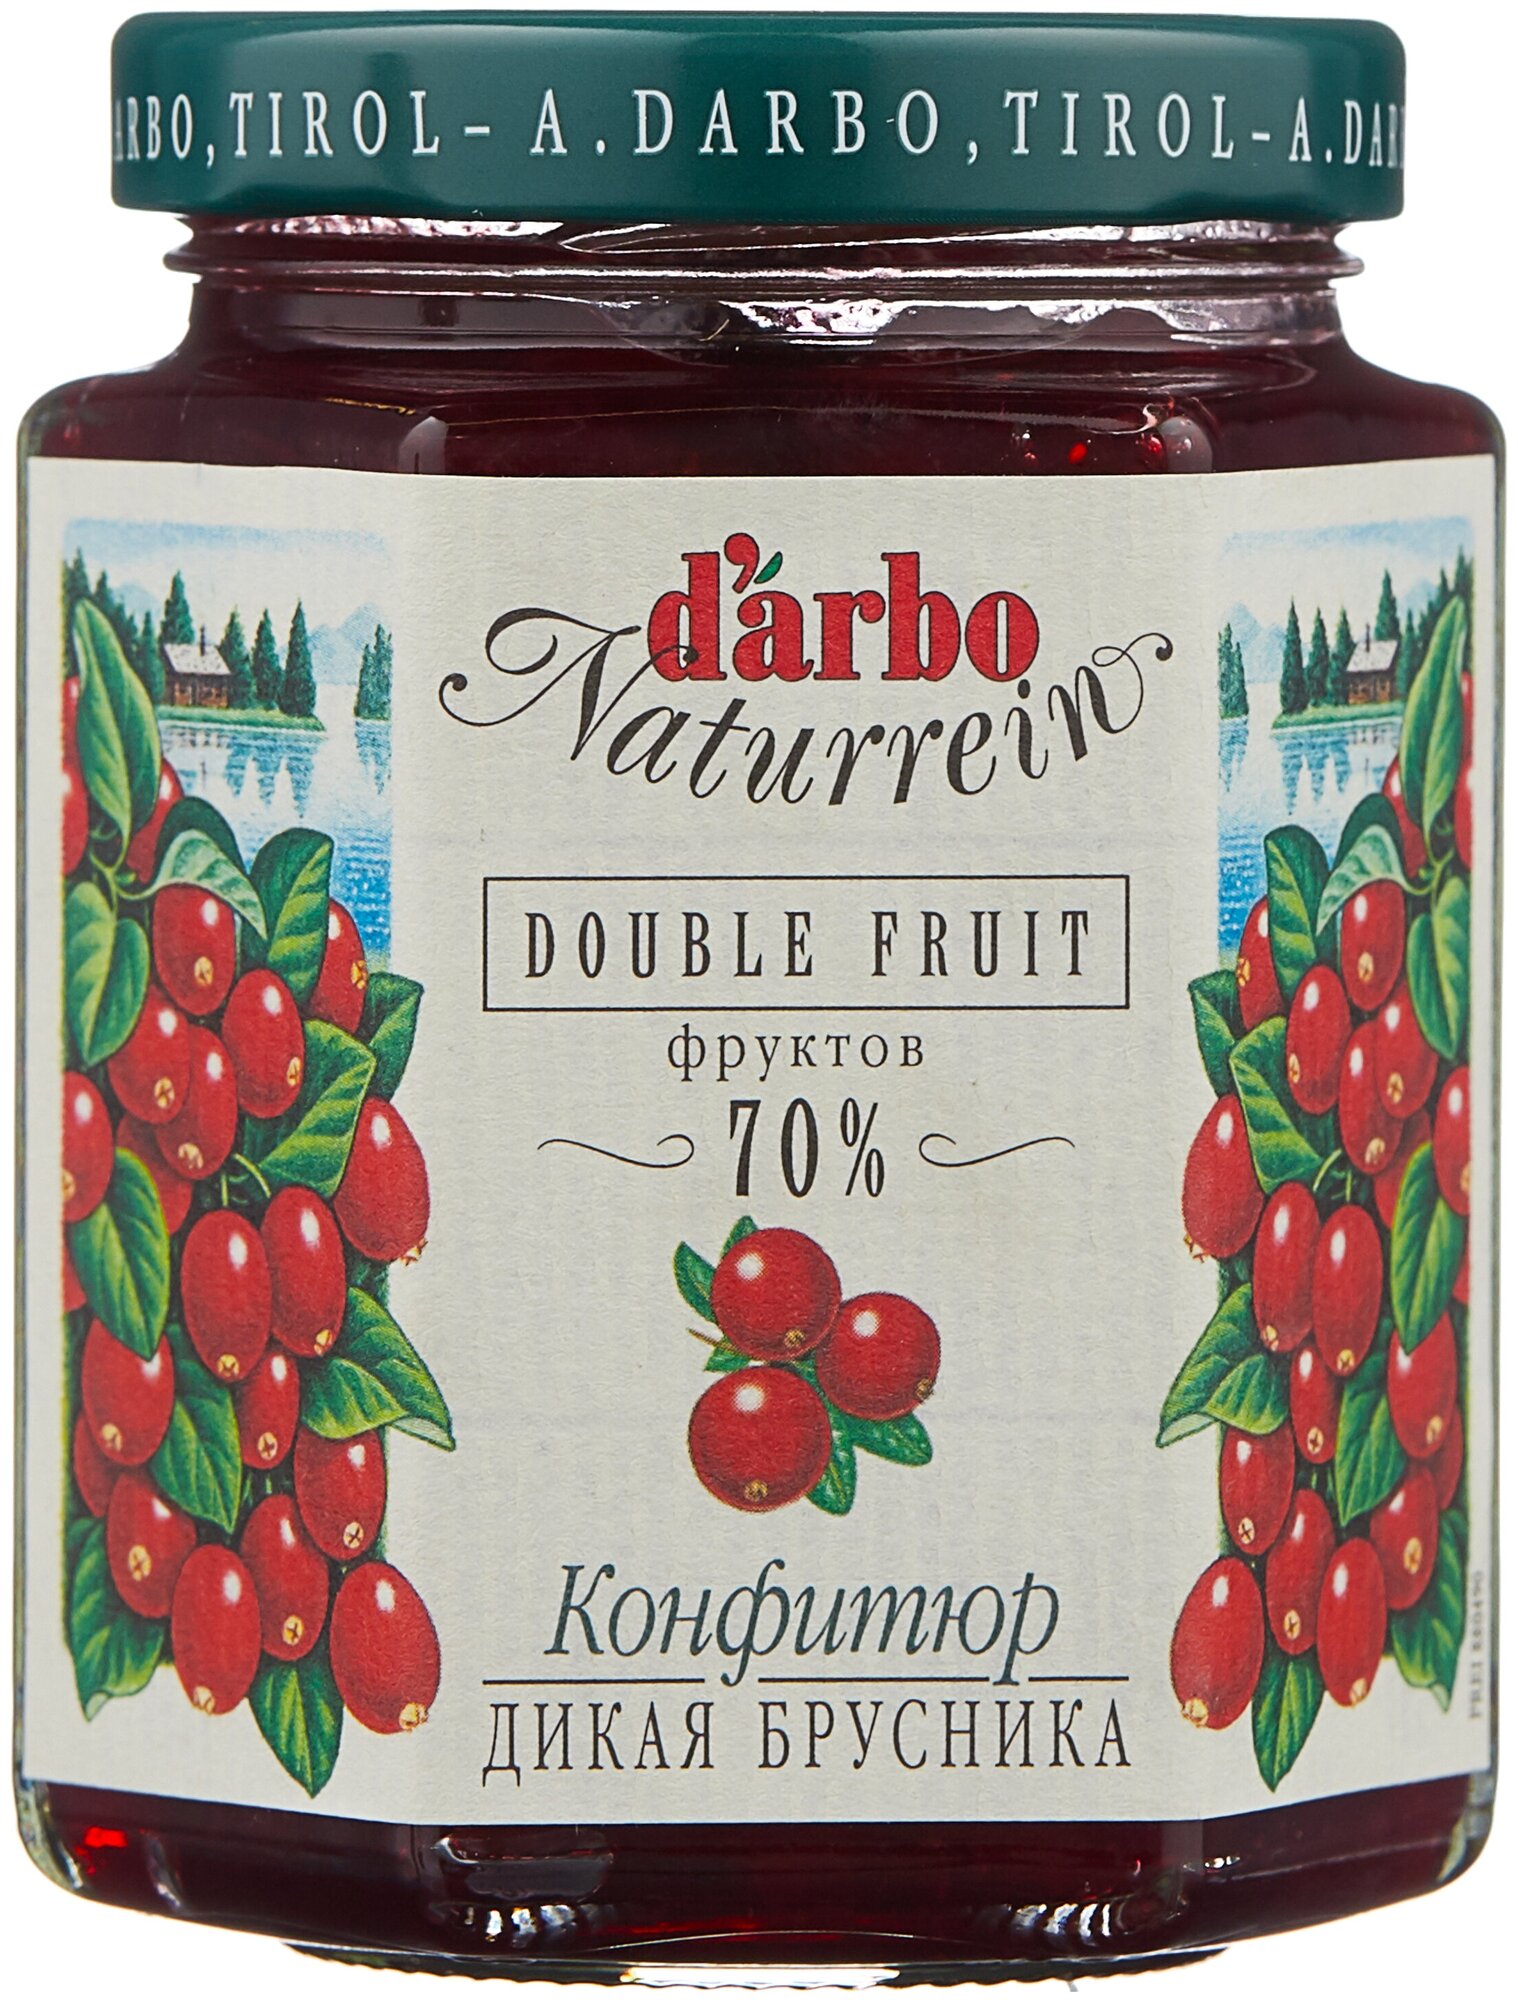 Конфитюр d'arbo Naturrein Double Fruit Дикая брусника, банка, 200 г